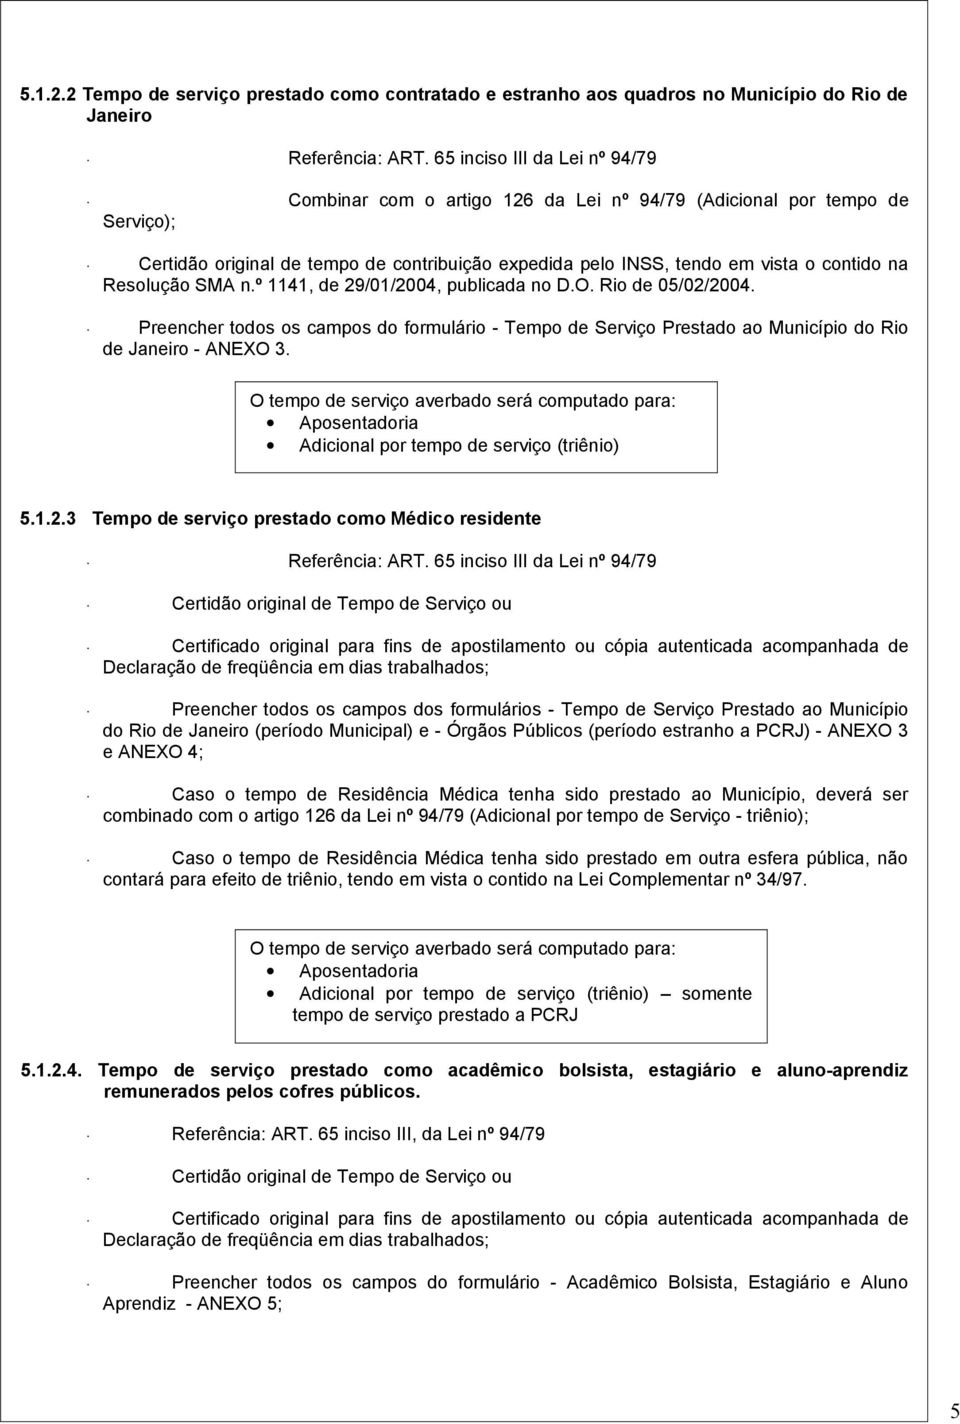 Resolução SMA n.º 1141, de 29/01/2004, publicada no D.O. Rio de 05/02/2004. Preencher todos os campos do formulário - Tempo de Serviço Prestado ao Município do Rio de Janeiro - ANEXO 3.